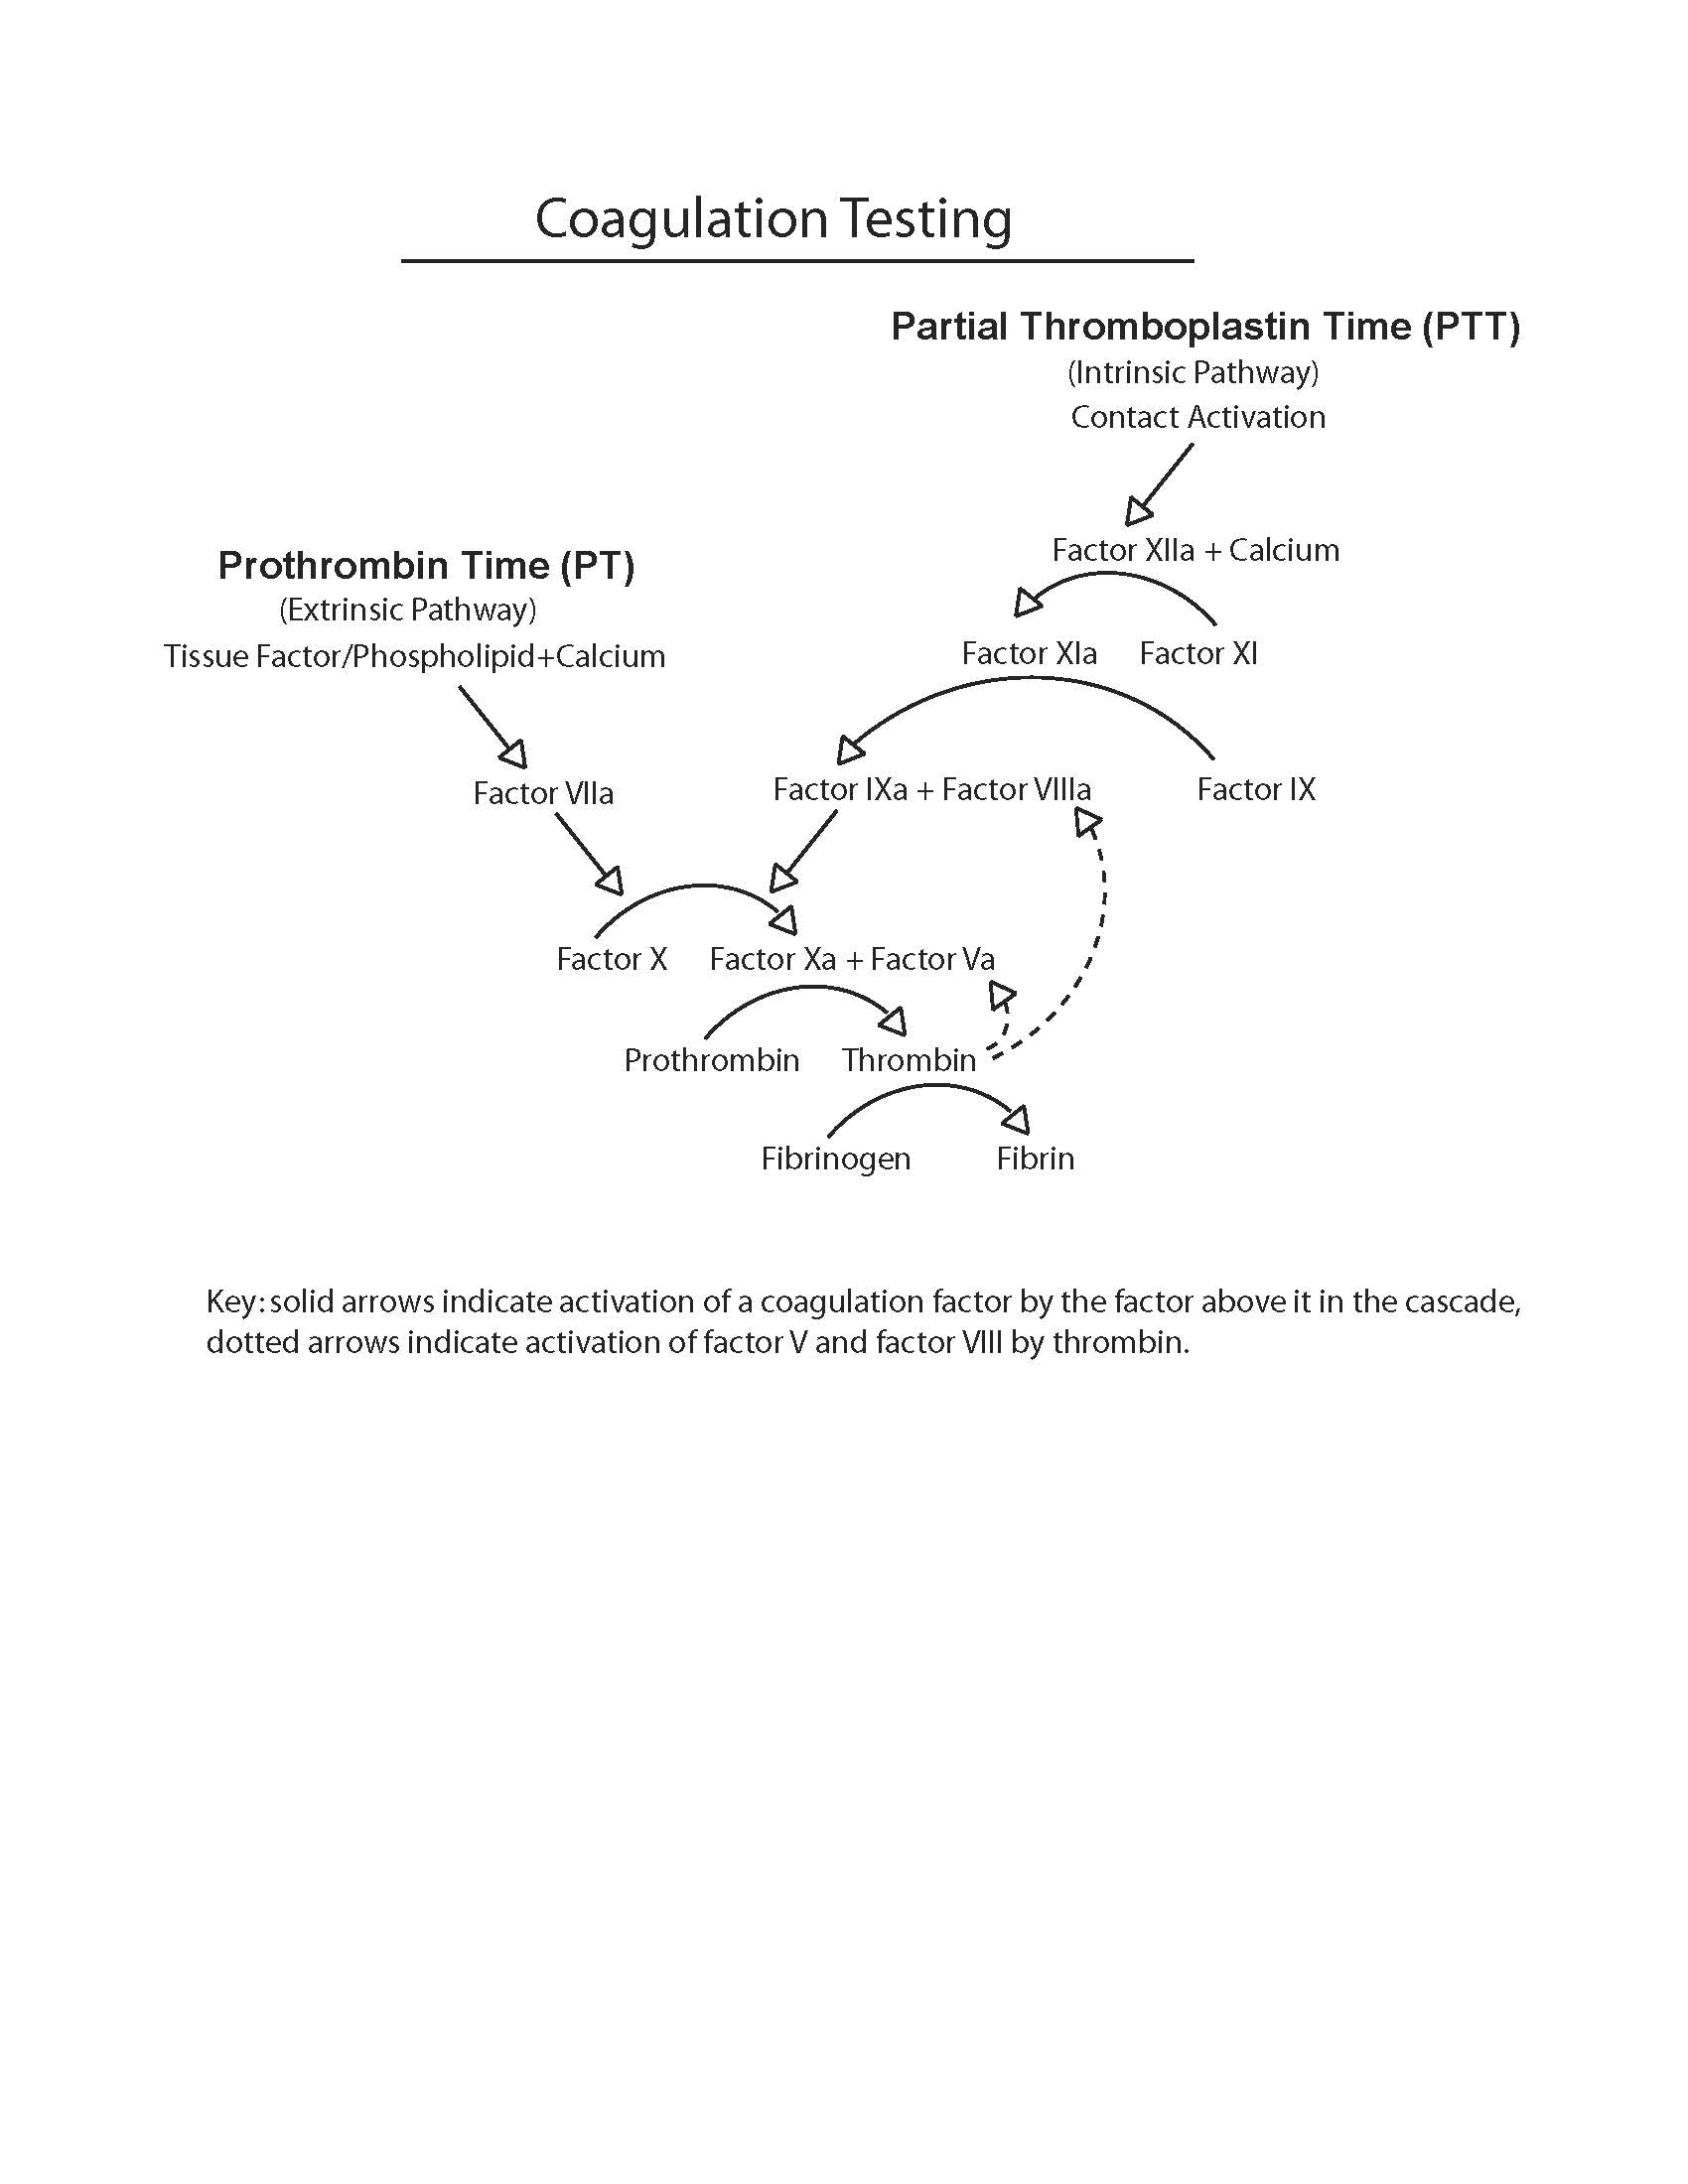 Diagram of the coagulation testing cascade